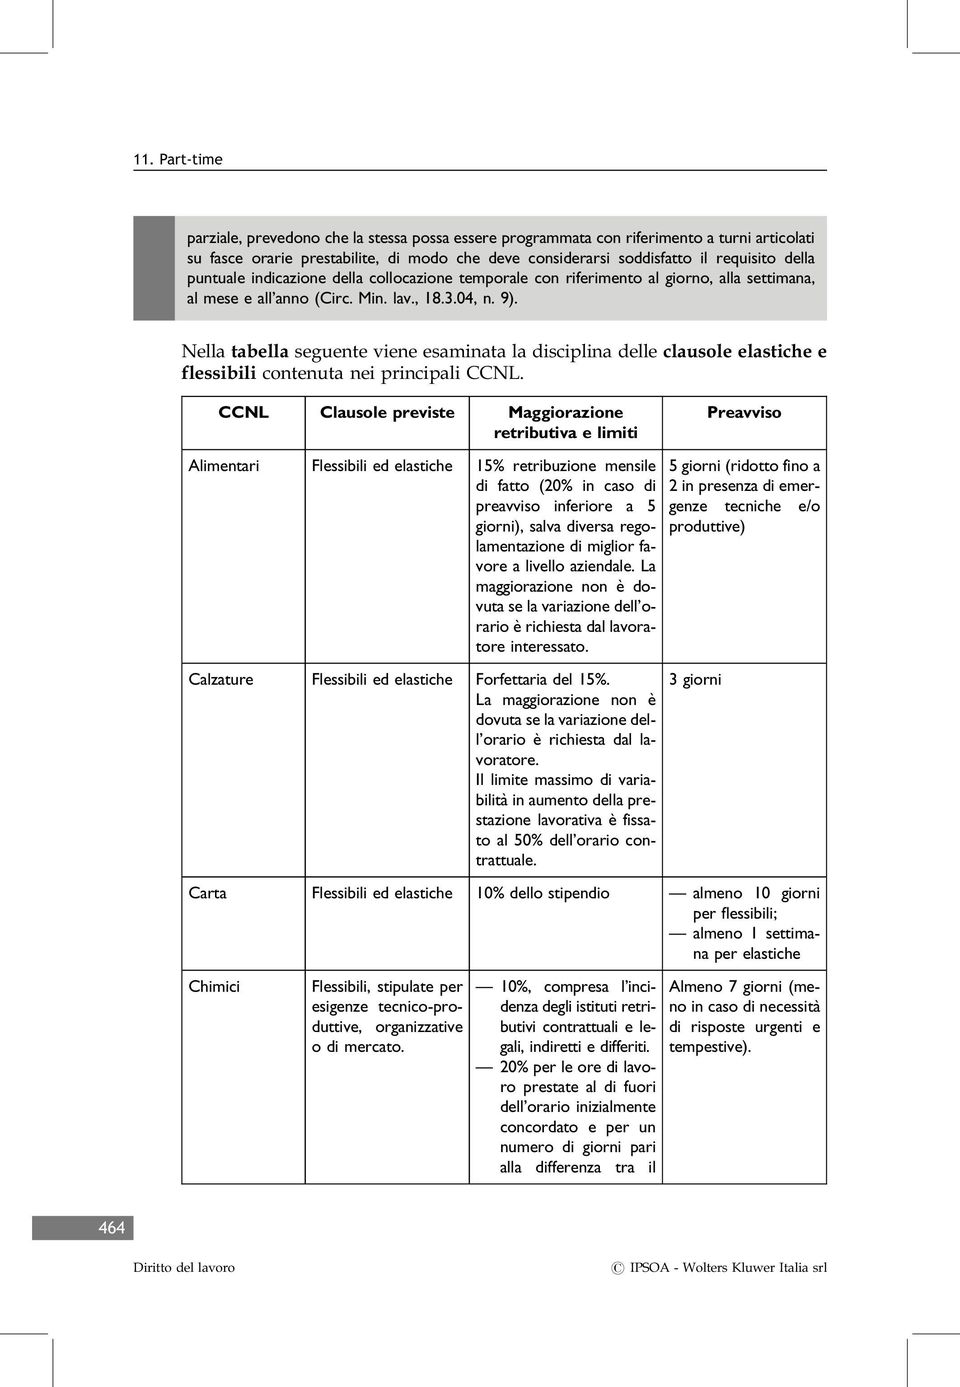 Nella tabella seguente viene esaminata la disciplina delle clausole elastiche e flessibili contenuta nei principali CCNL.